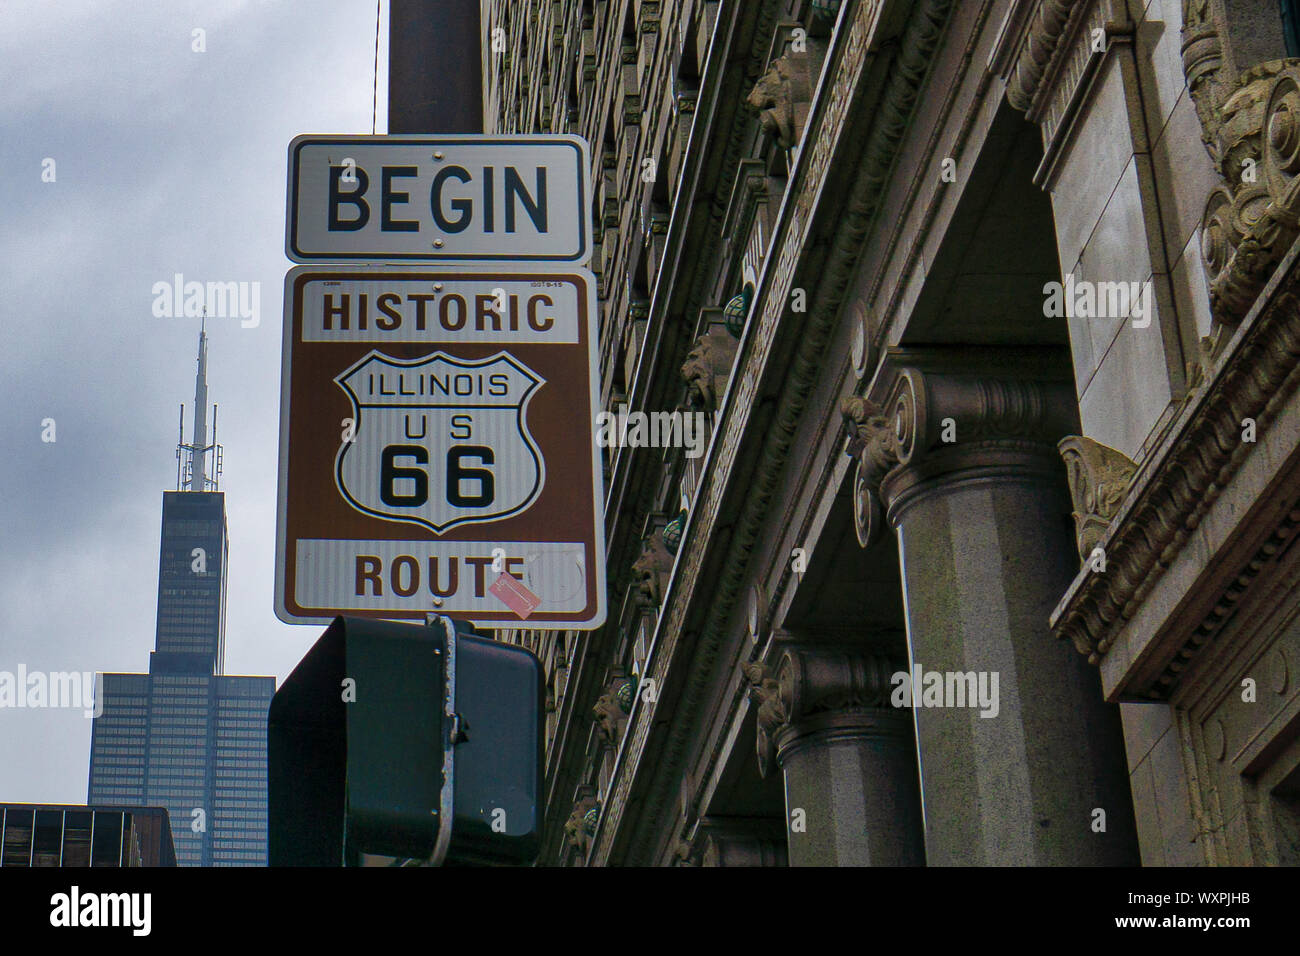 L'historique Route 66 commencer à signer, Chicago, United States Banque D'Images